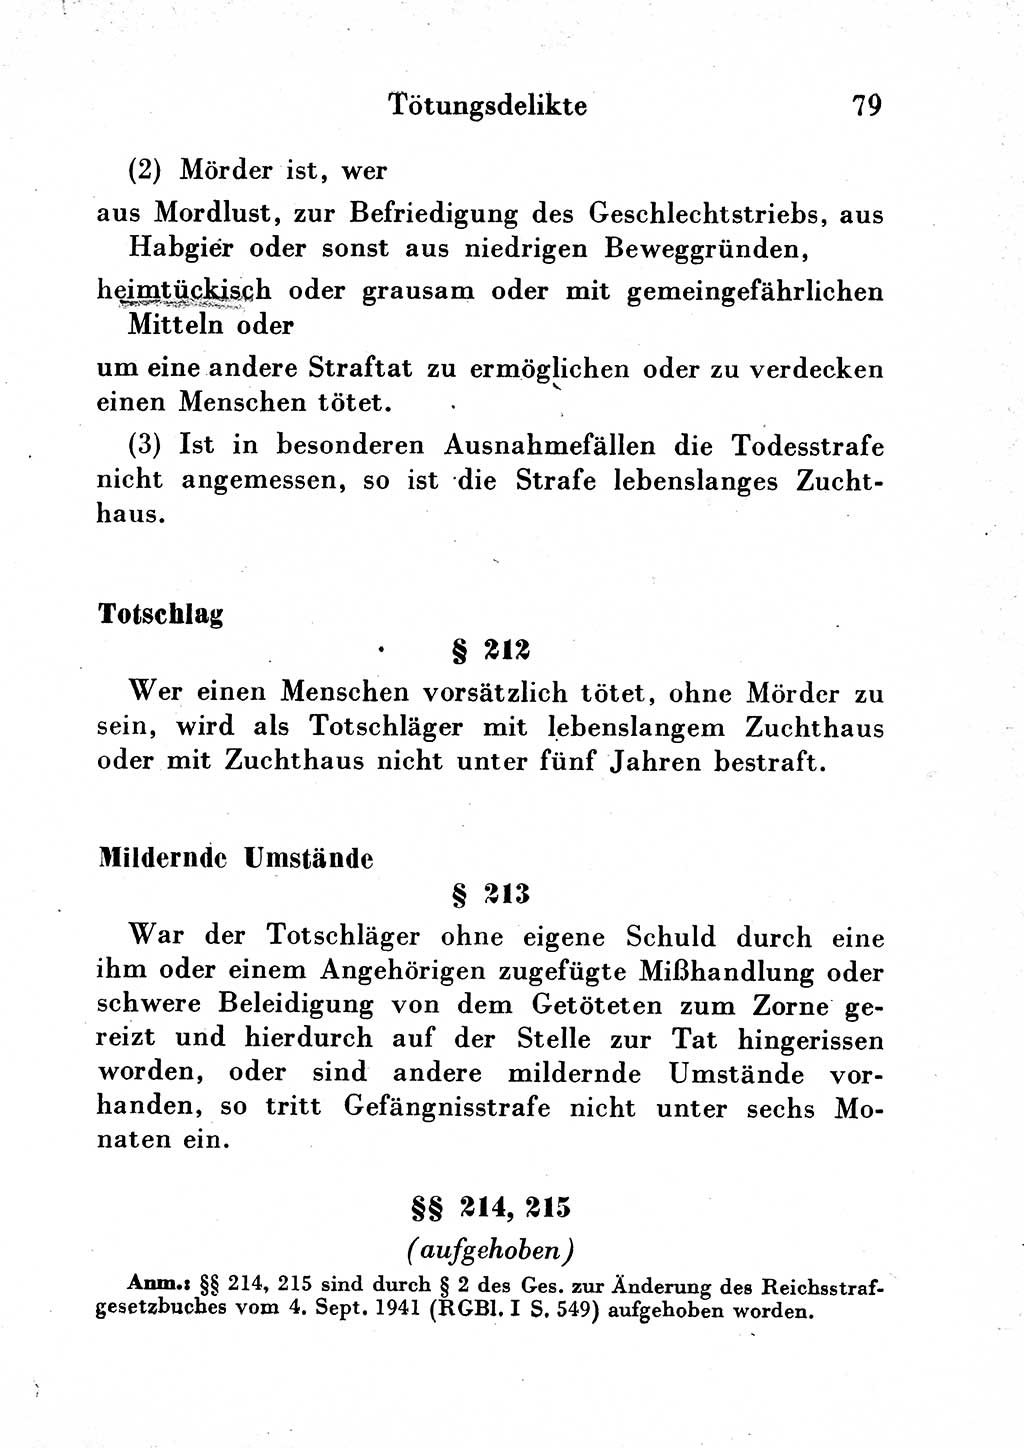 Strafgesetzbuch (StGB) und andere Strafgesetze [Deutsche Demokratische Republik (DDR)] 1954, Seite 79 (StGB Strafges. DDR 1954, S. 79)